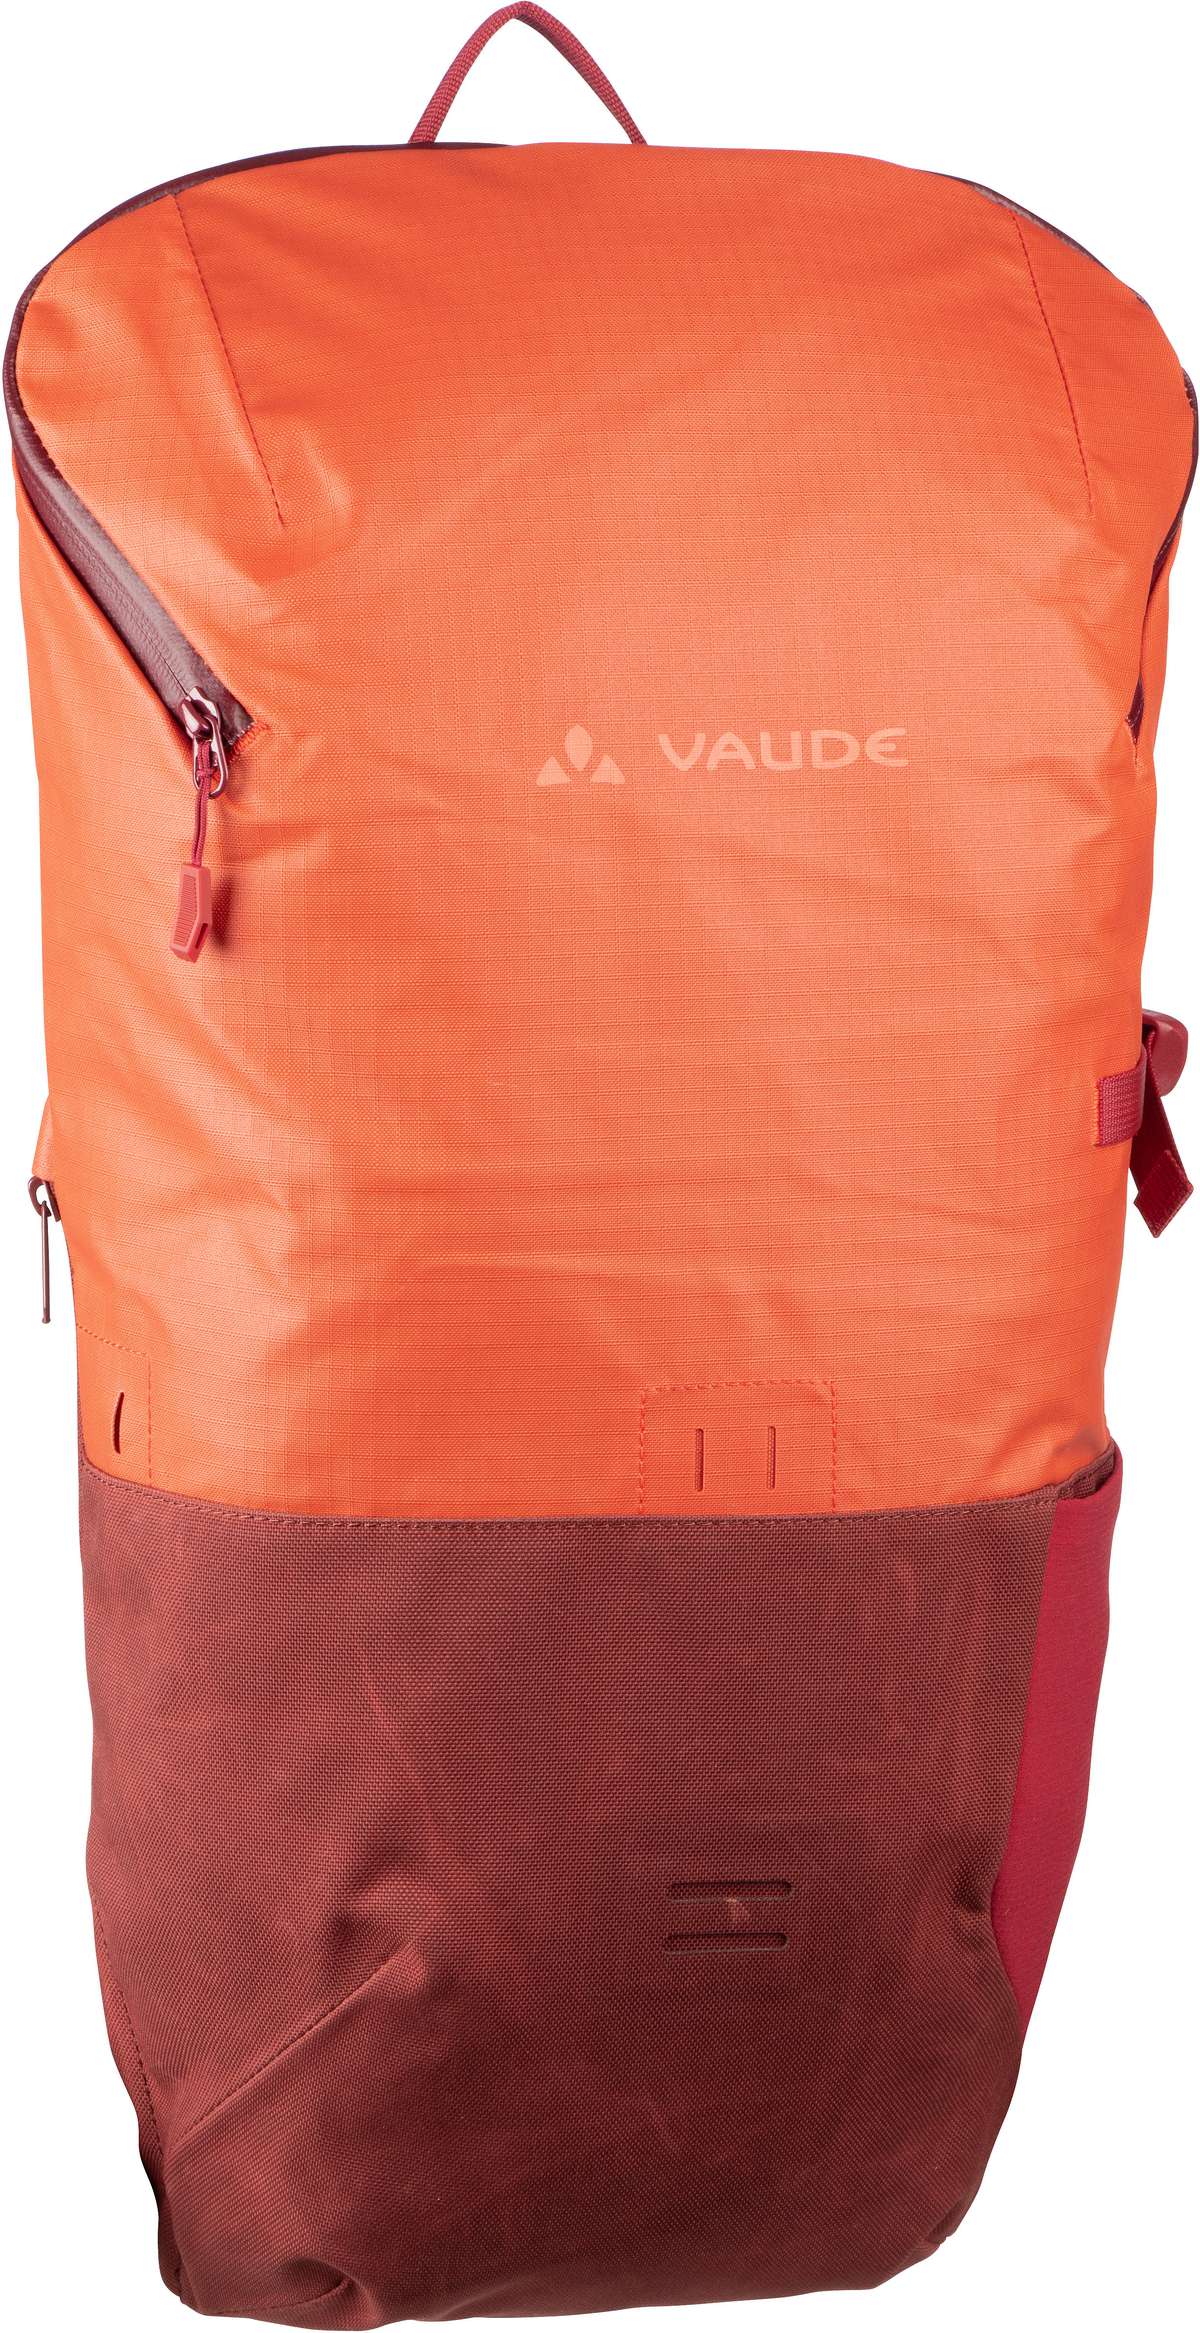 Vaude CityGo 14  in Rot (14 Liter), Rucksack / Backpack